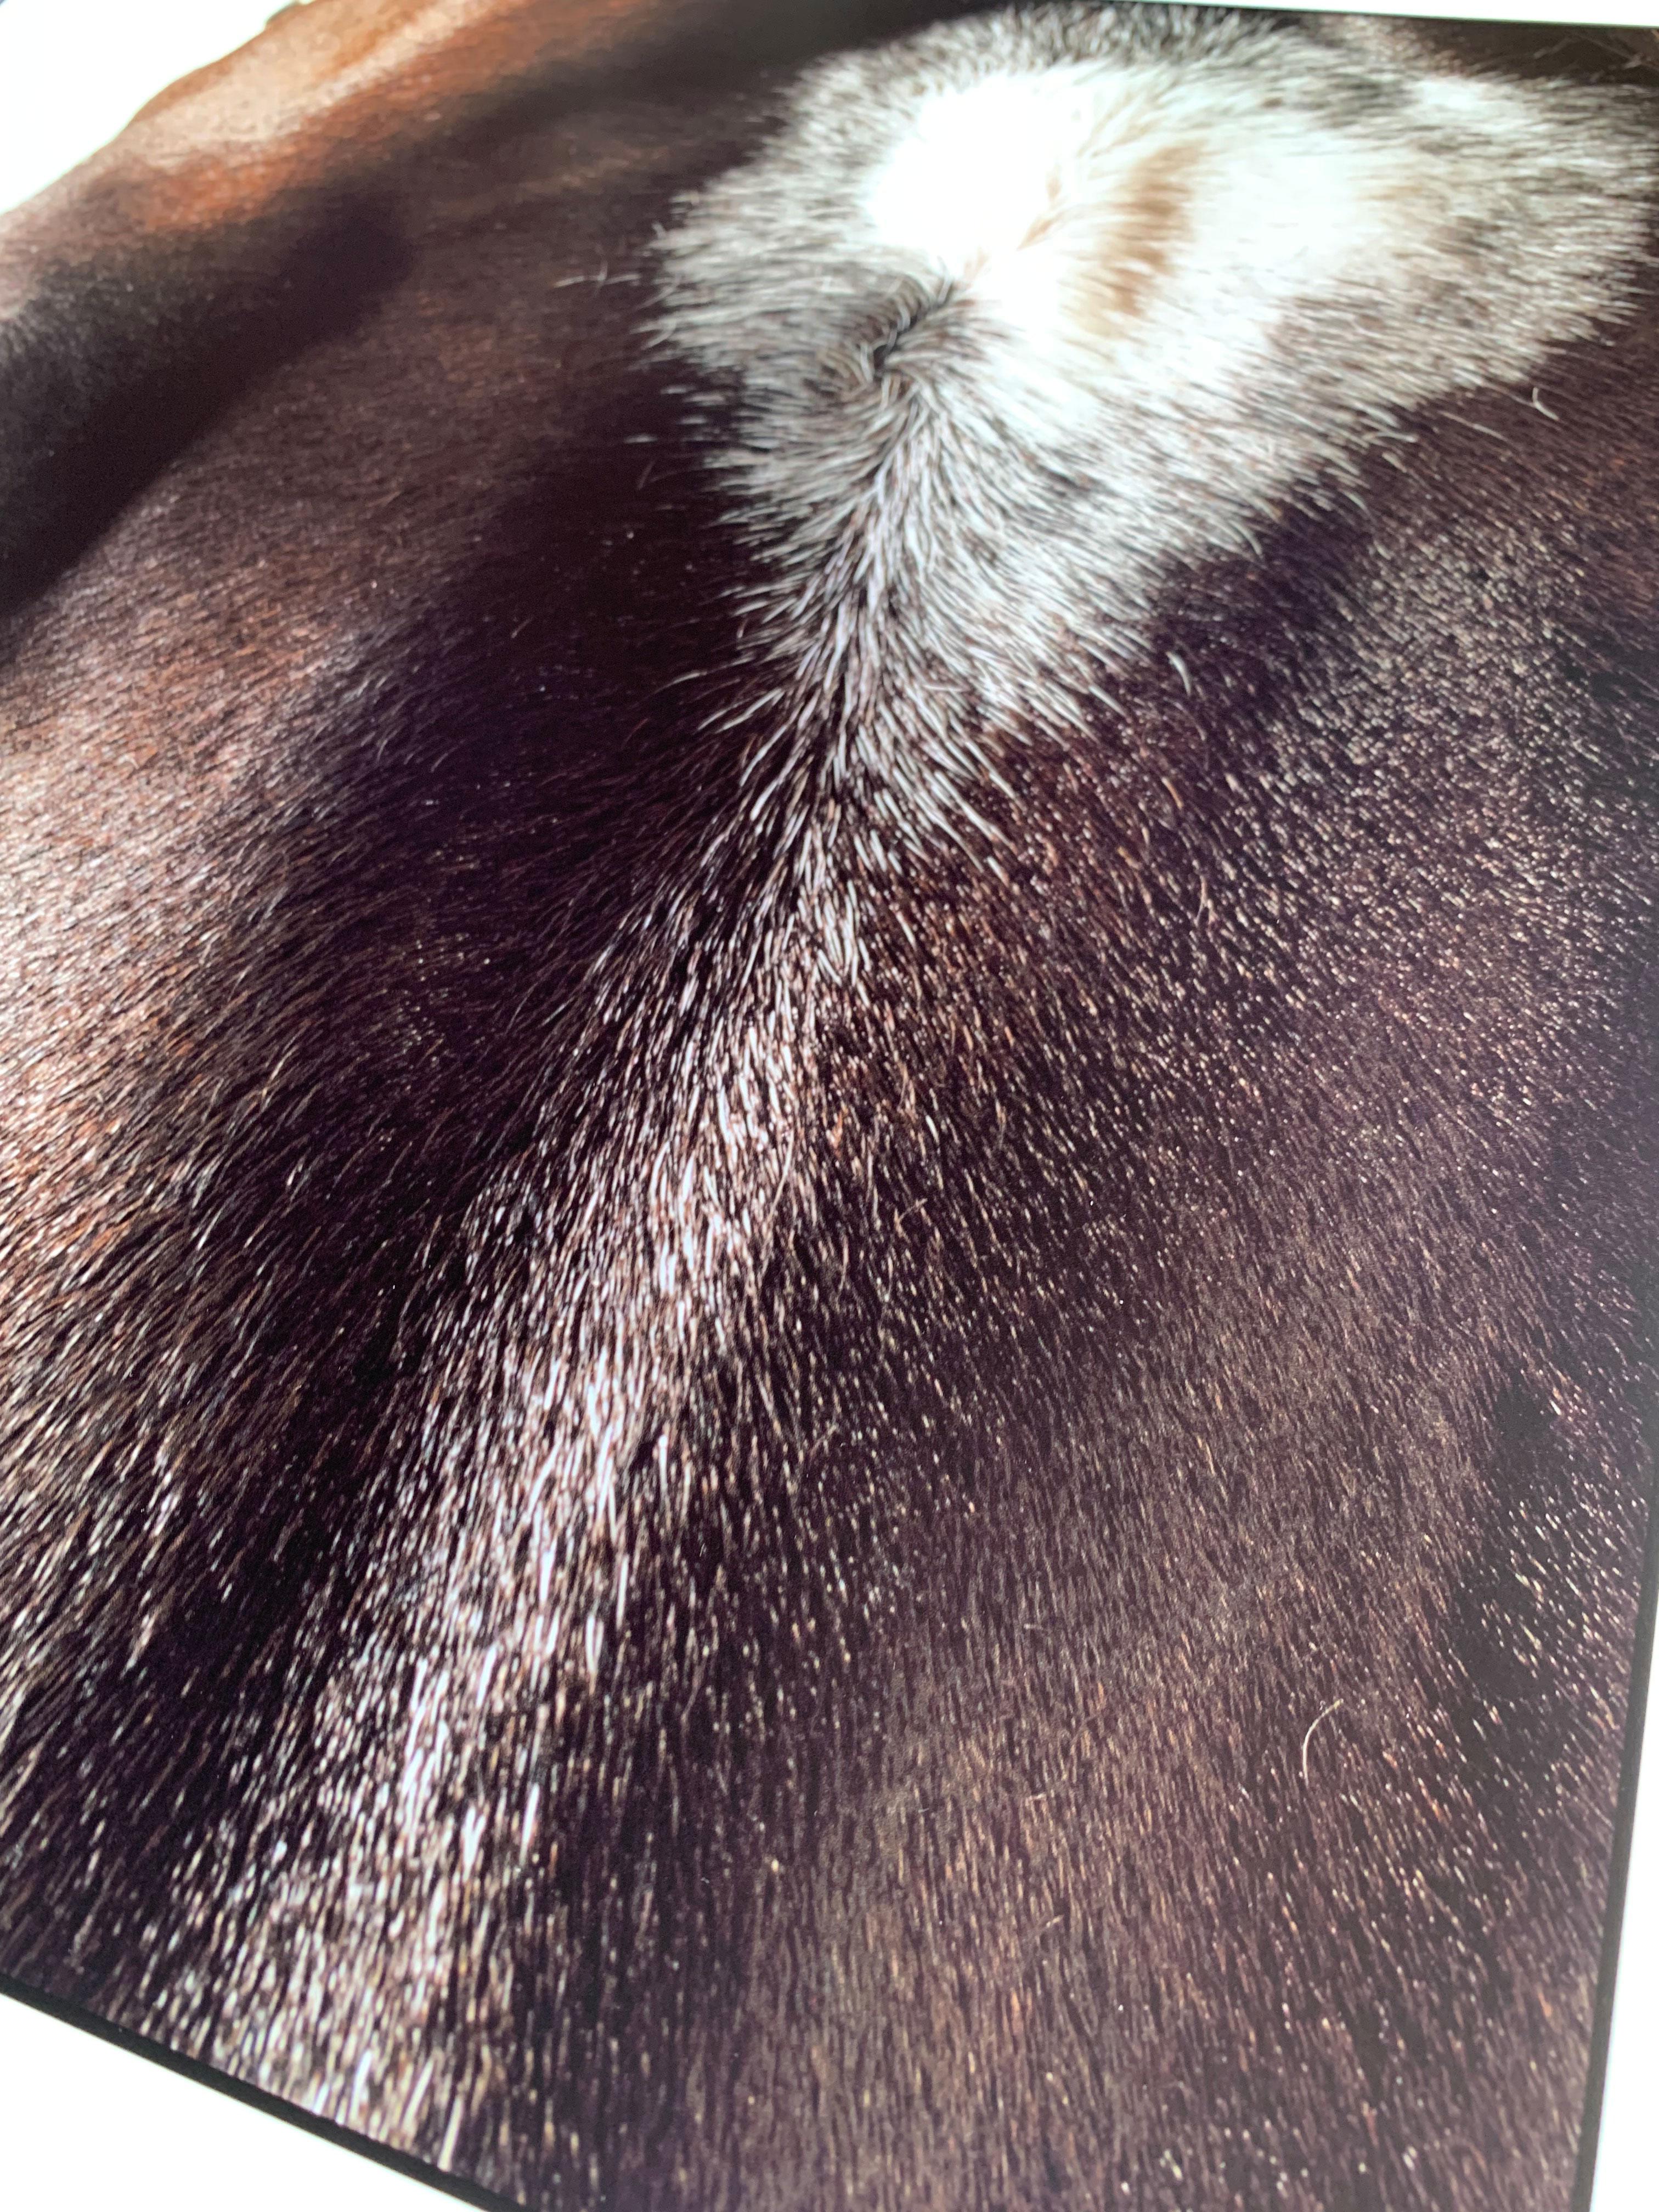 Medaglia d'Oro, Tête et œil de cheval - Portrait d'étalon non encadré Impression sur papier - Noir Animal Print par John Reardon